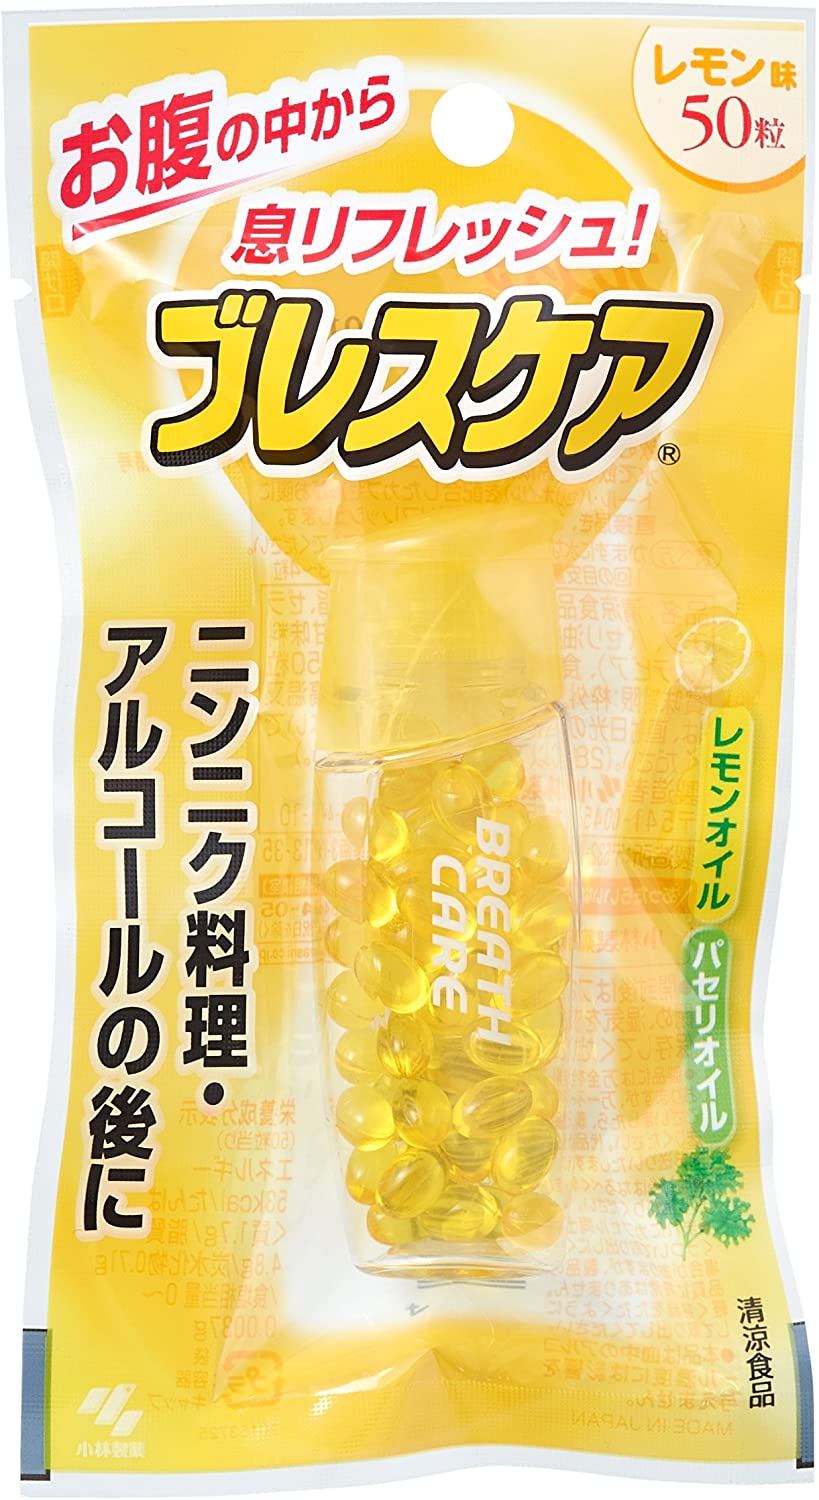 小林制藥breath care口氣清新糖/香口丸 檸檬味 50粒降至330日元+3積分